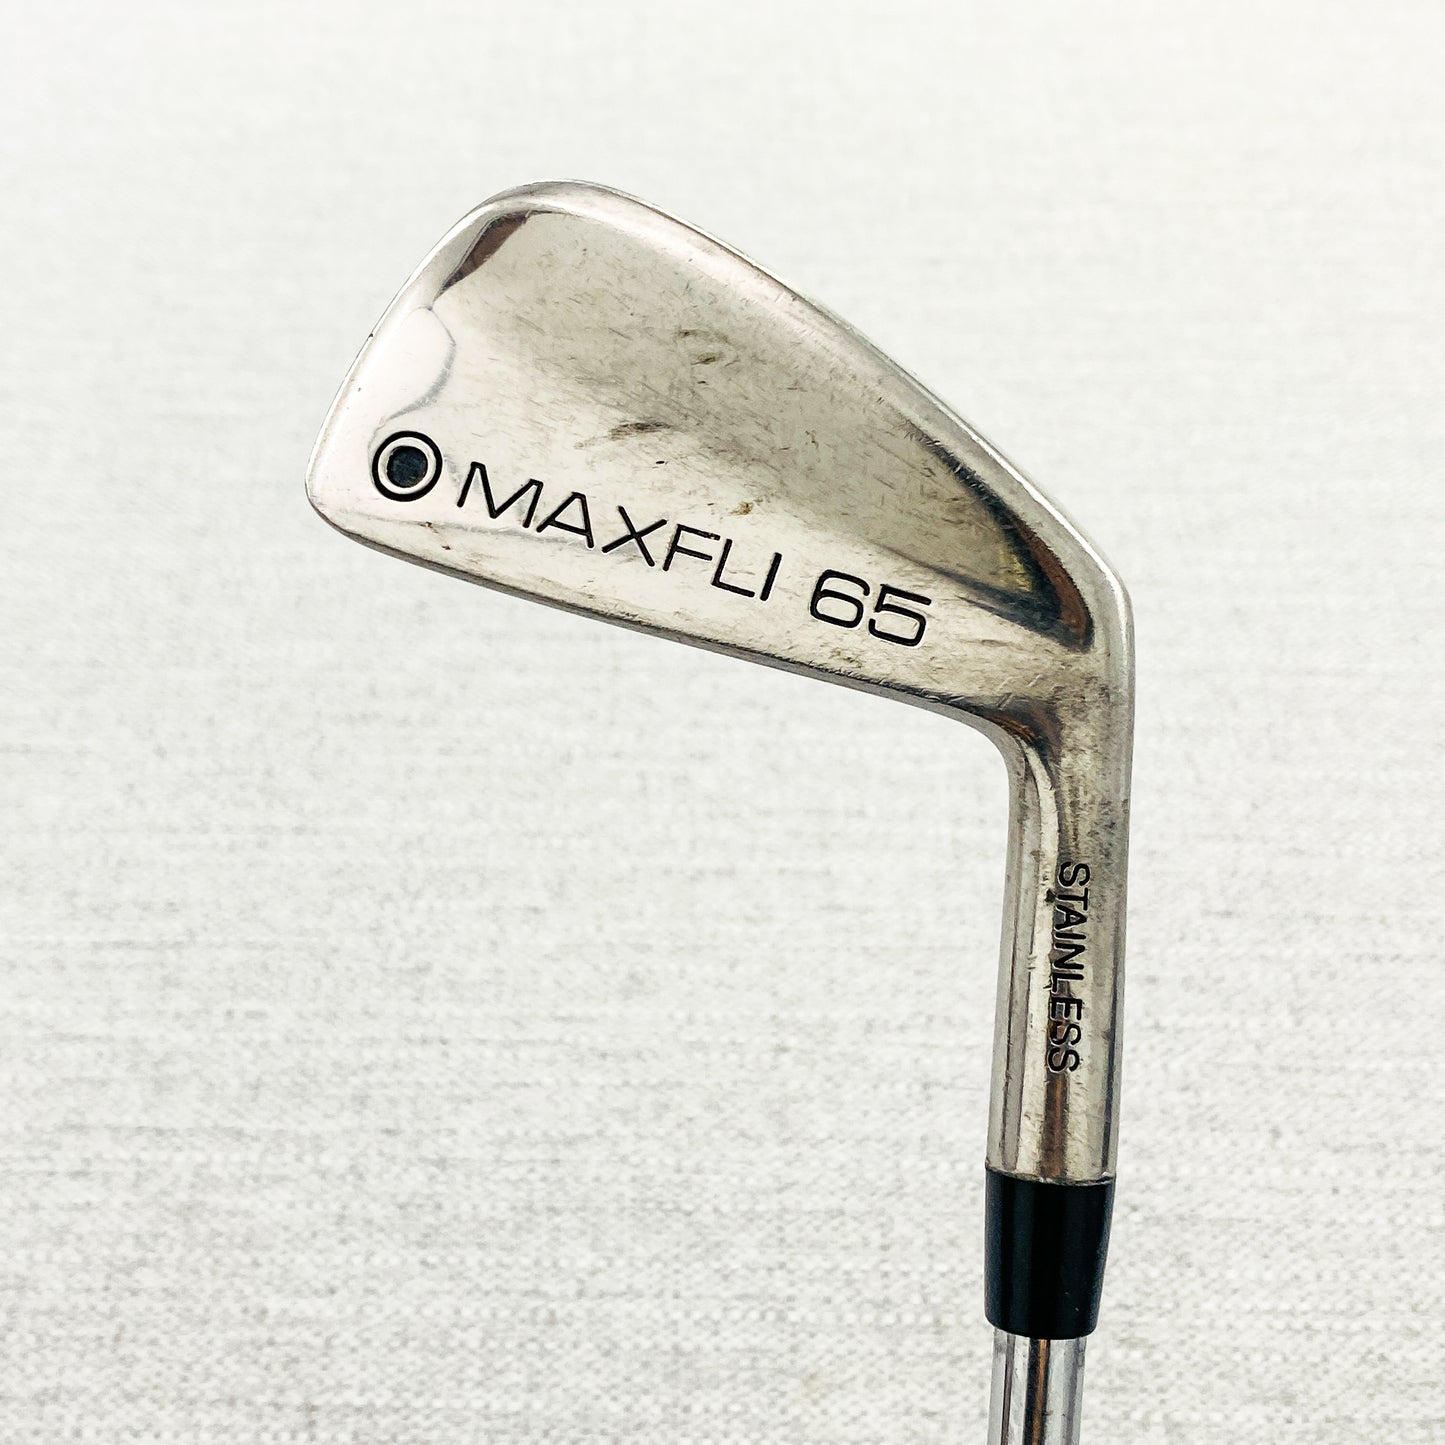 Dunlop Maxfli 65 2-iron. Stiff Flex - Good Condition # 10617